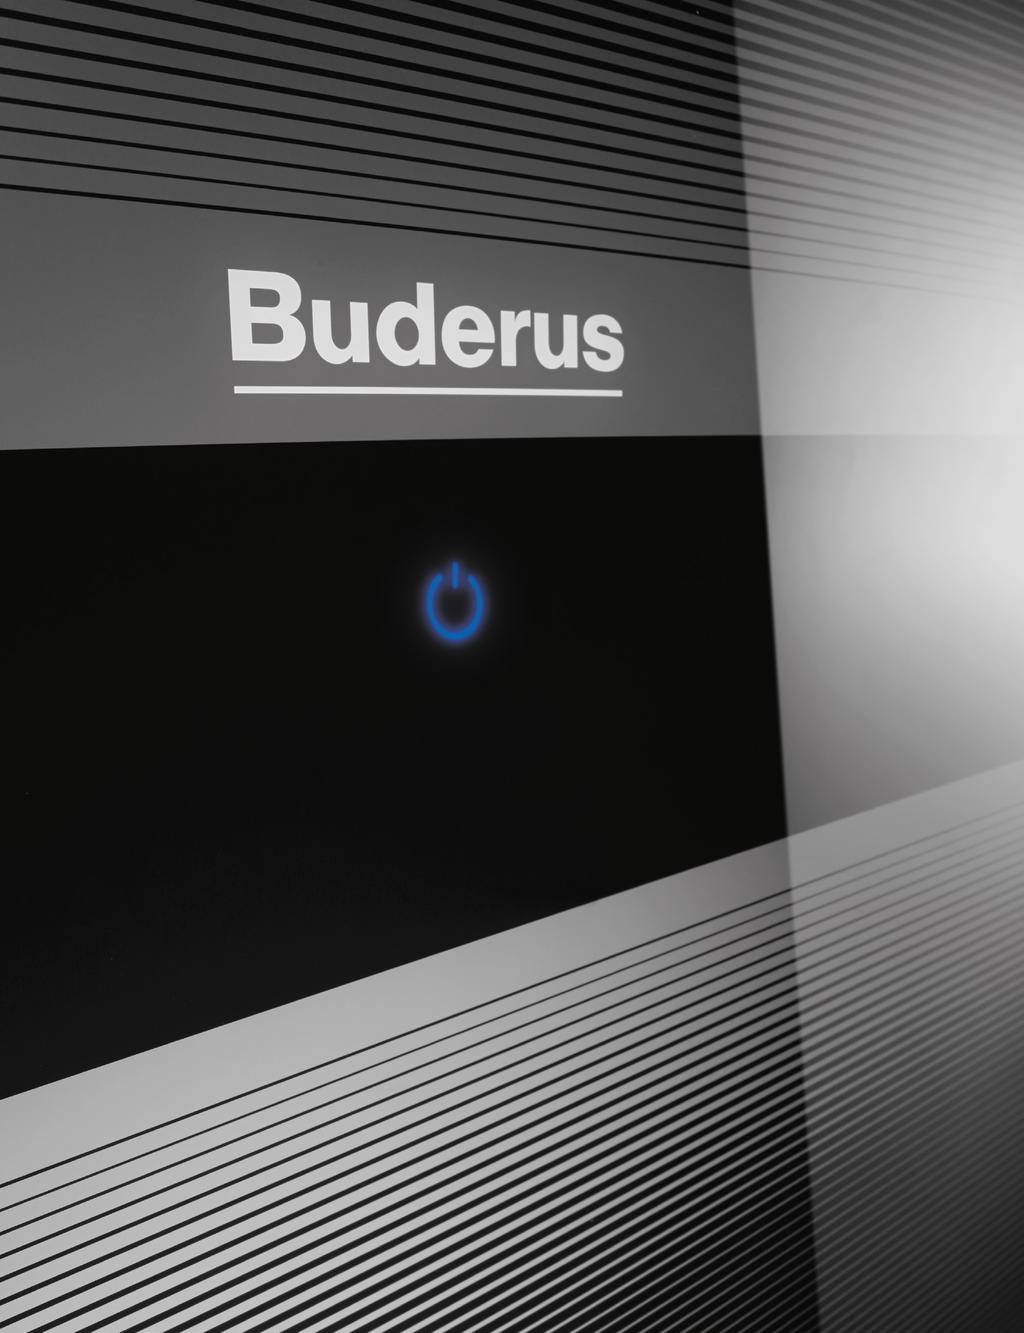 Konnektivität bei Buderus vernetzte Heiztechnik für die Zukunft. Digitaler Heizkomfort in einer vernetzten Welt.